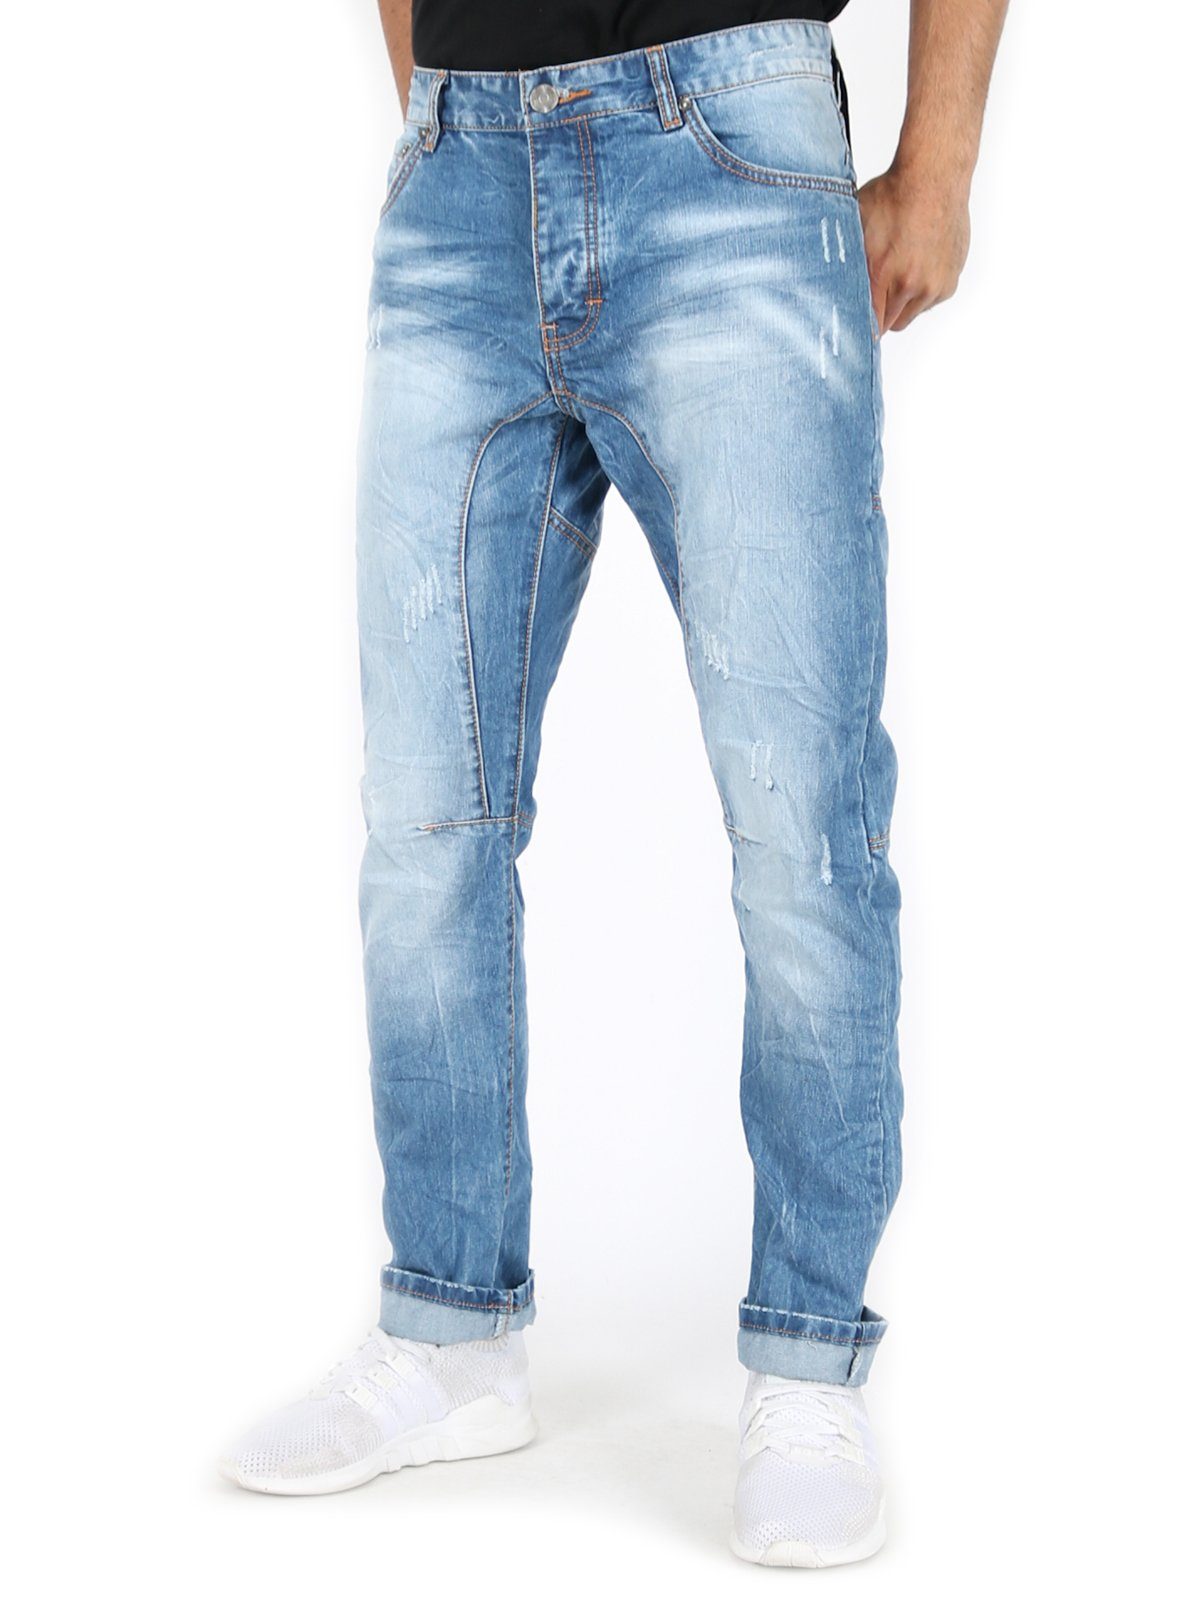 Vintage Kontrastnähten - mit ST-03046#D Hose Justing Tapered-fit-Jeans